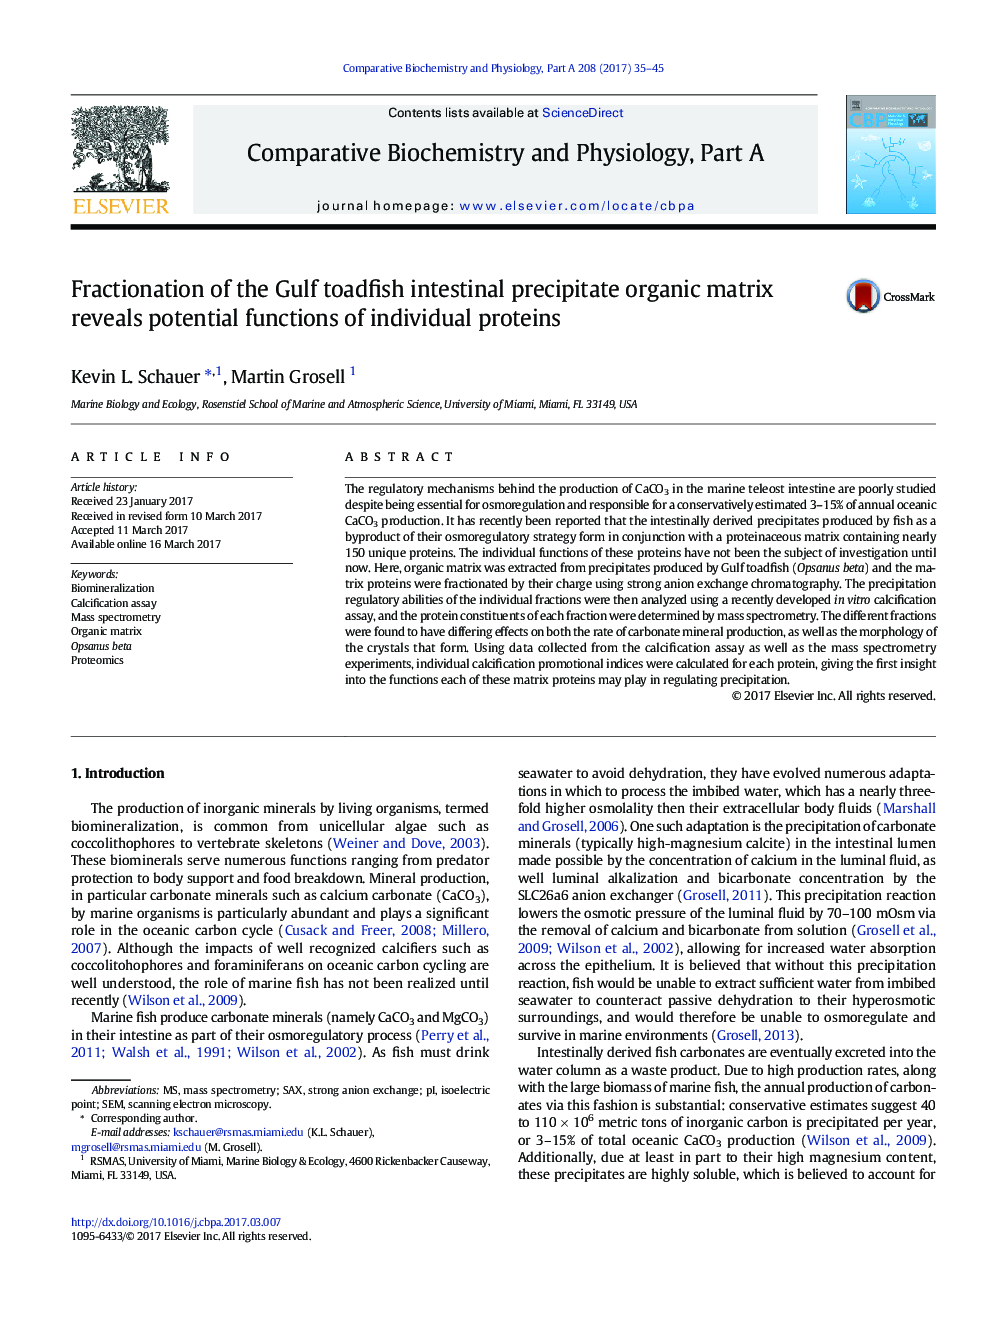 تقسیم بندی ماتریکس آلی رس در روده ماهی خلیج فارس نشاندهنده عملکرد بالقوه پروتئین های فردی است 